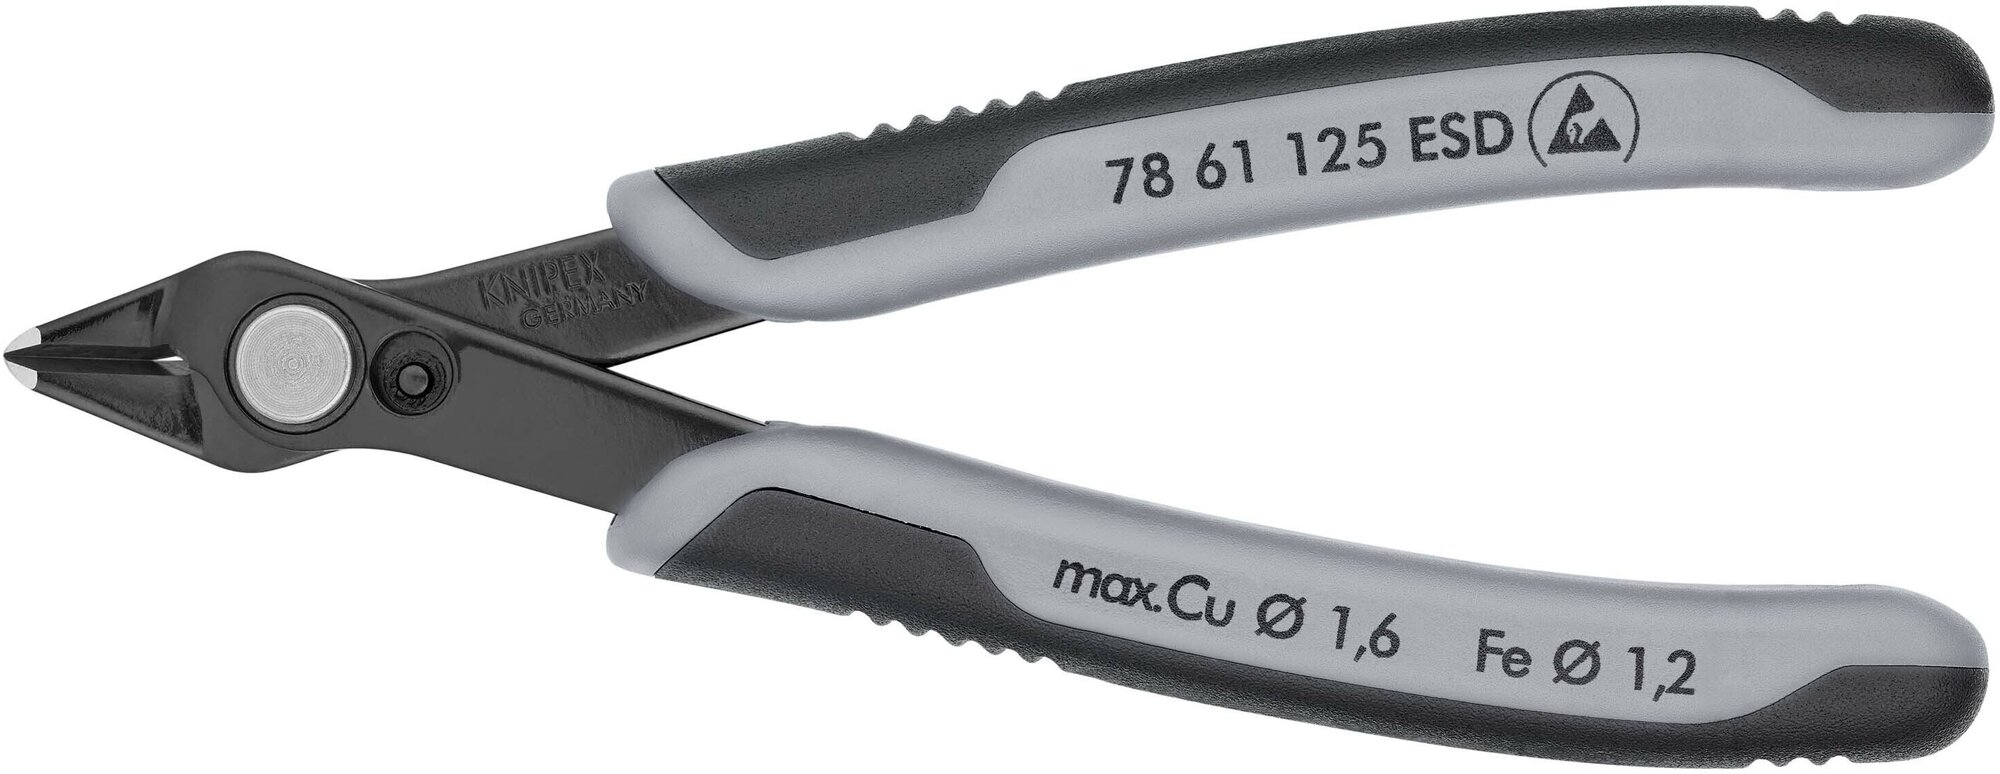 Бокорезы KNIPEX Electronic Super Knips прецизионные ESD, для реза оптоволокна, нерж, 125 мм, 2-комп антистатические ручки KN-7861125ESD